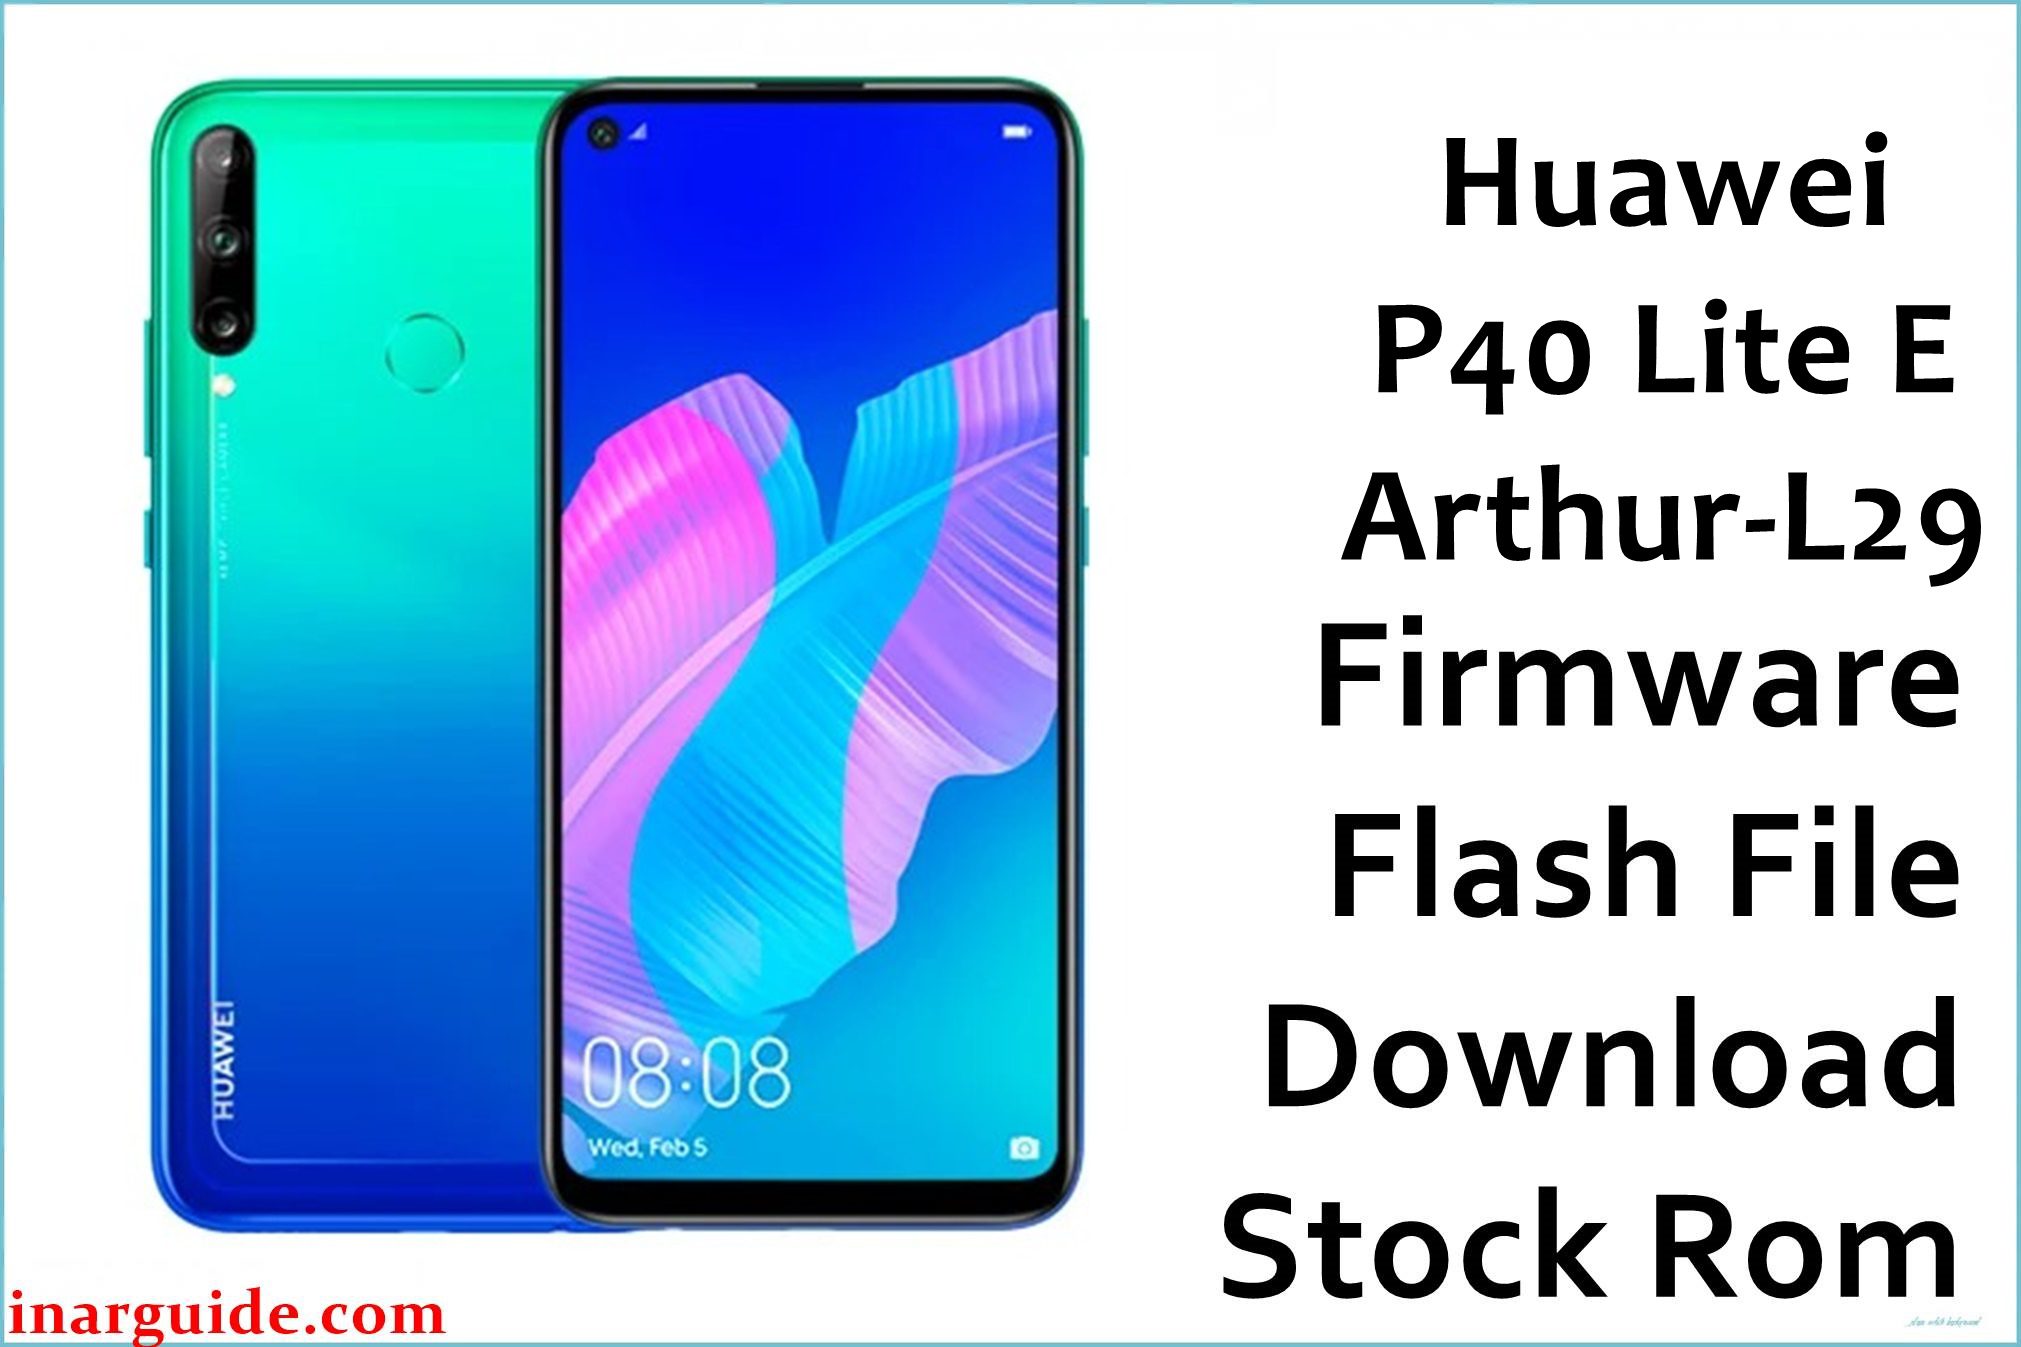 Huawei P40 Lite E Arthur L29